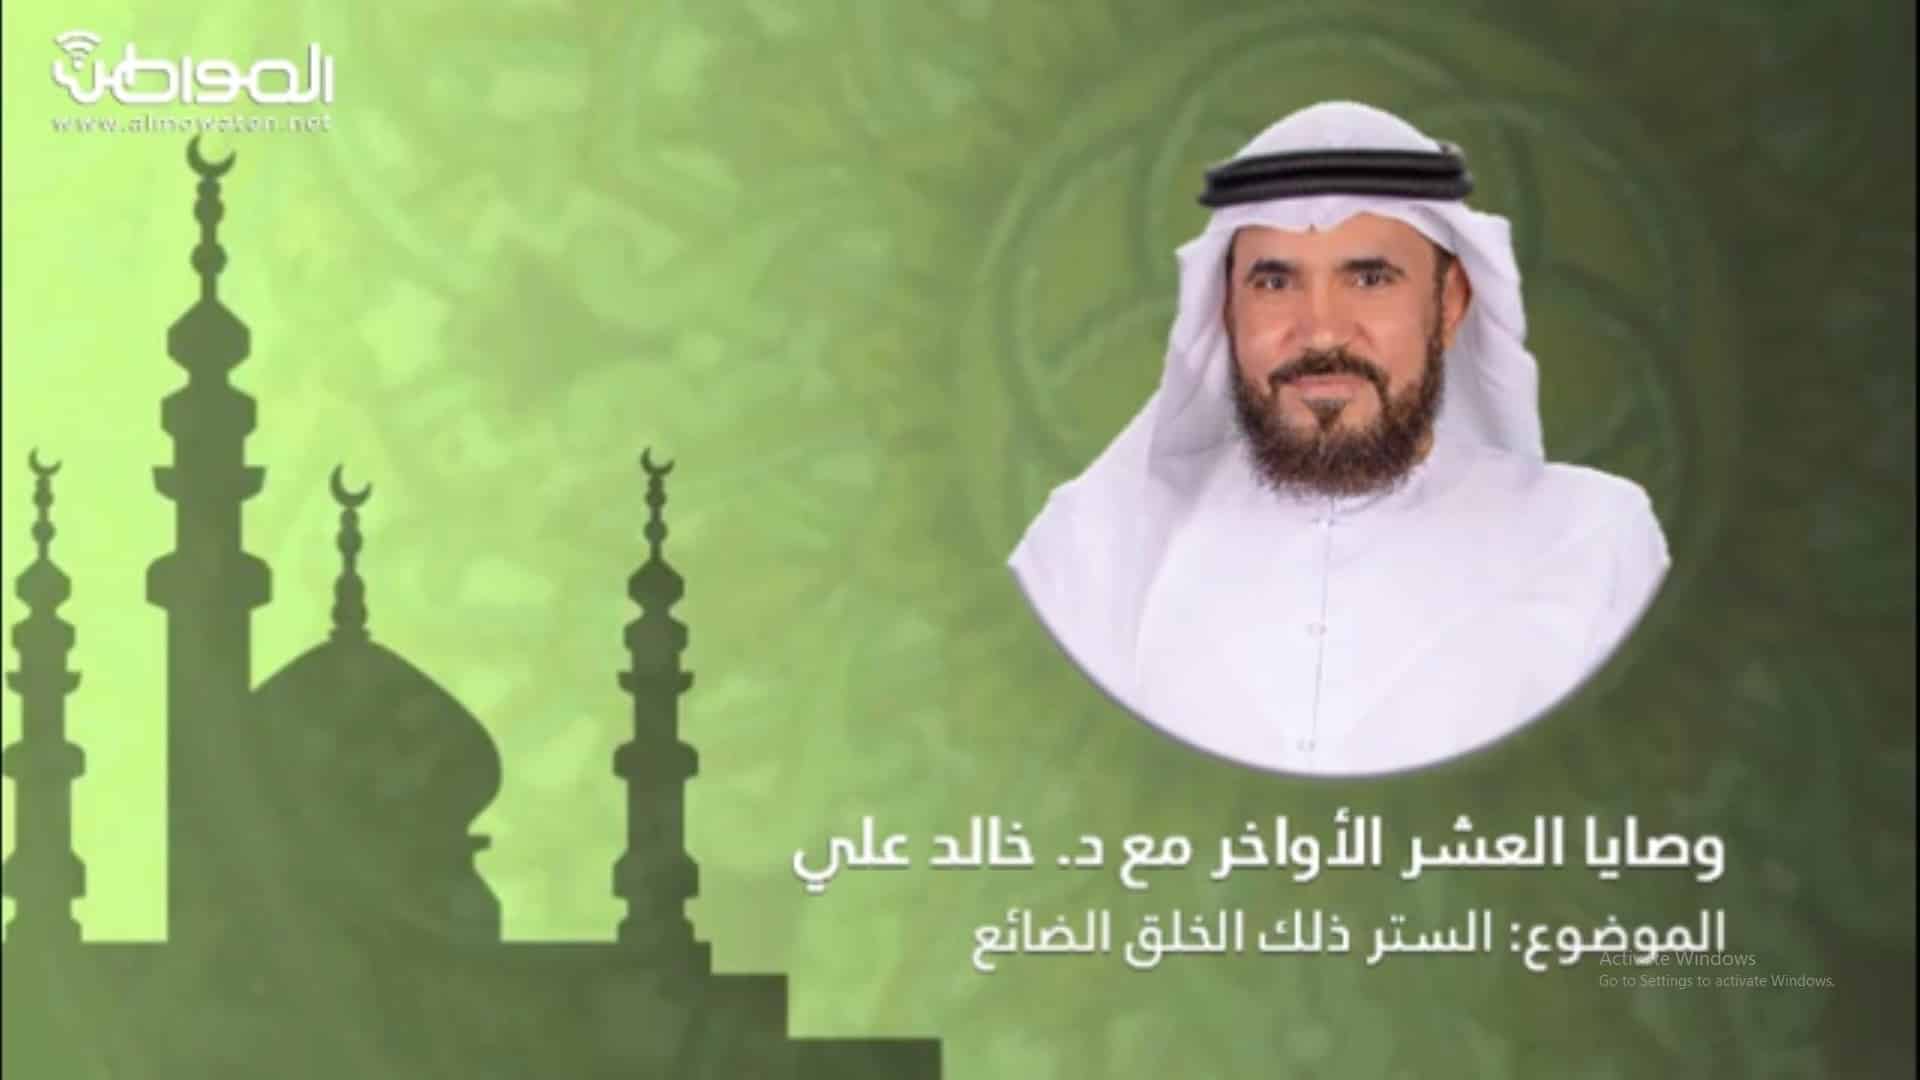 الشيخ خالد علي : استروا الآخرين حتى لا يفضحكم الله